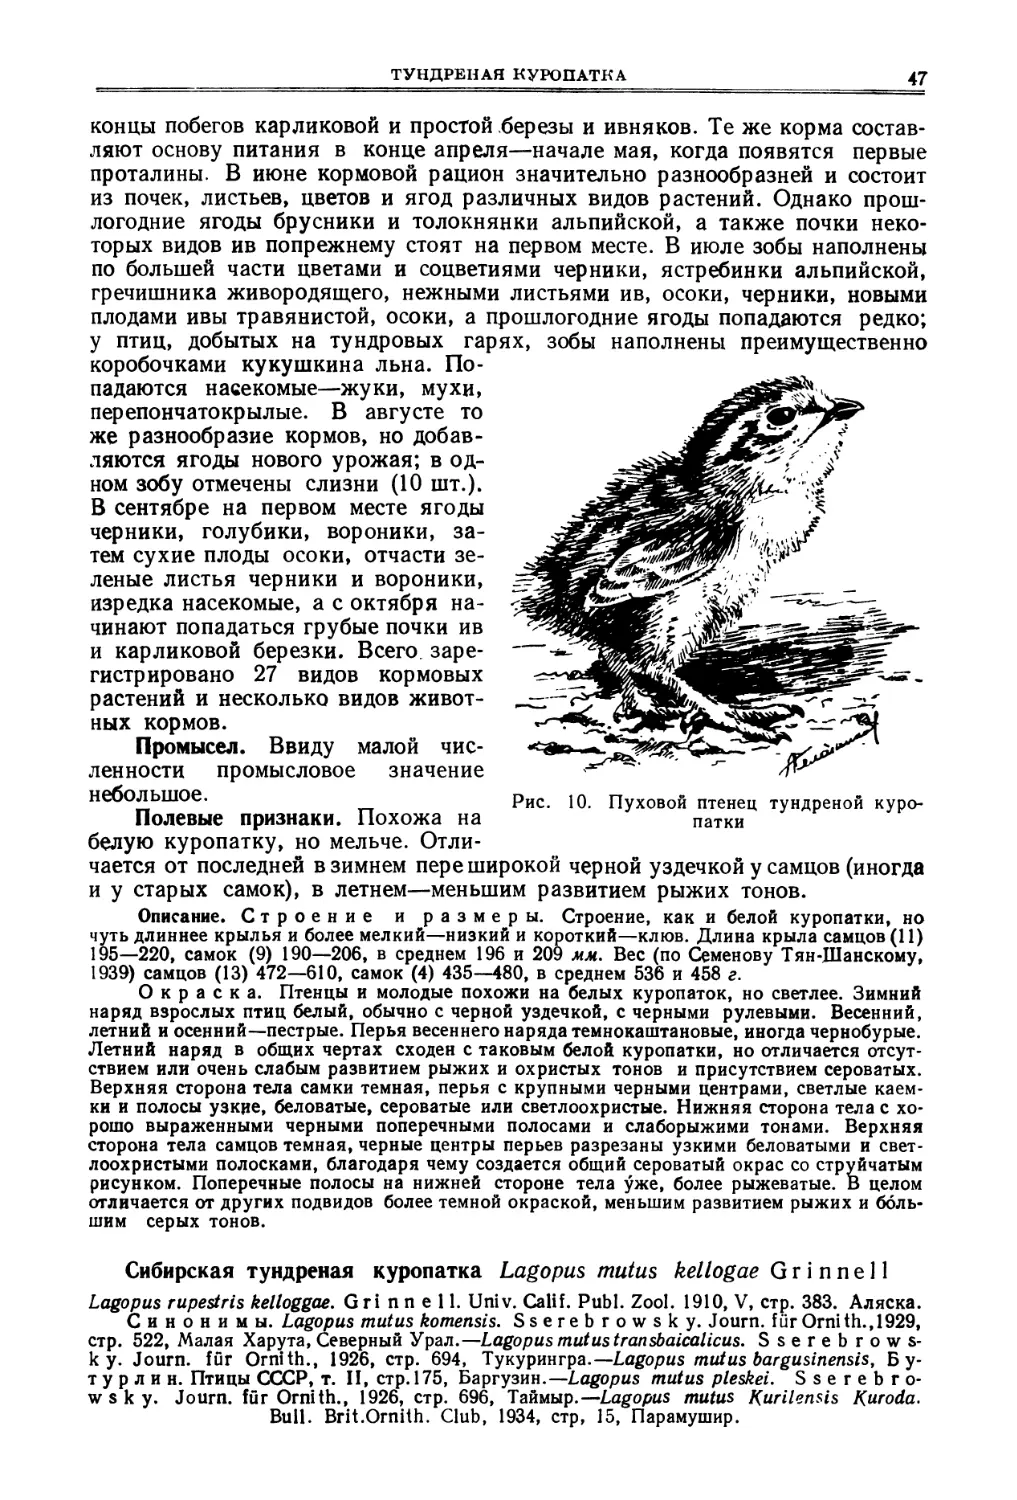 Сибирская тундреная куропатка